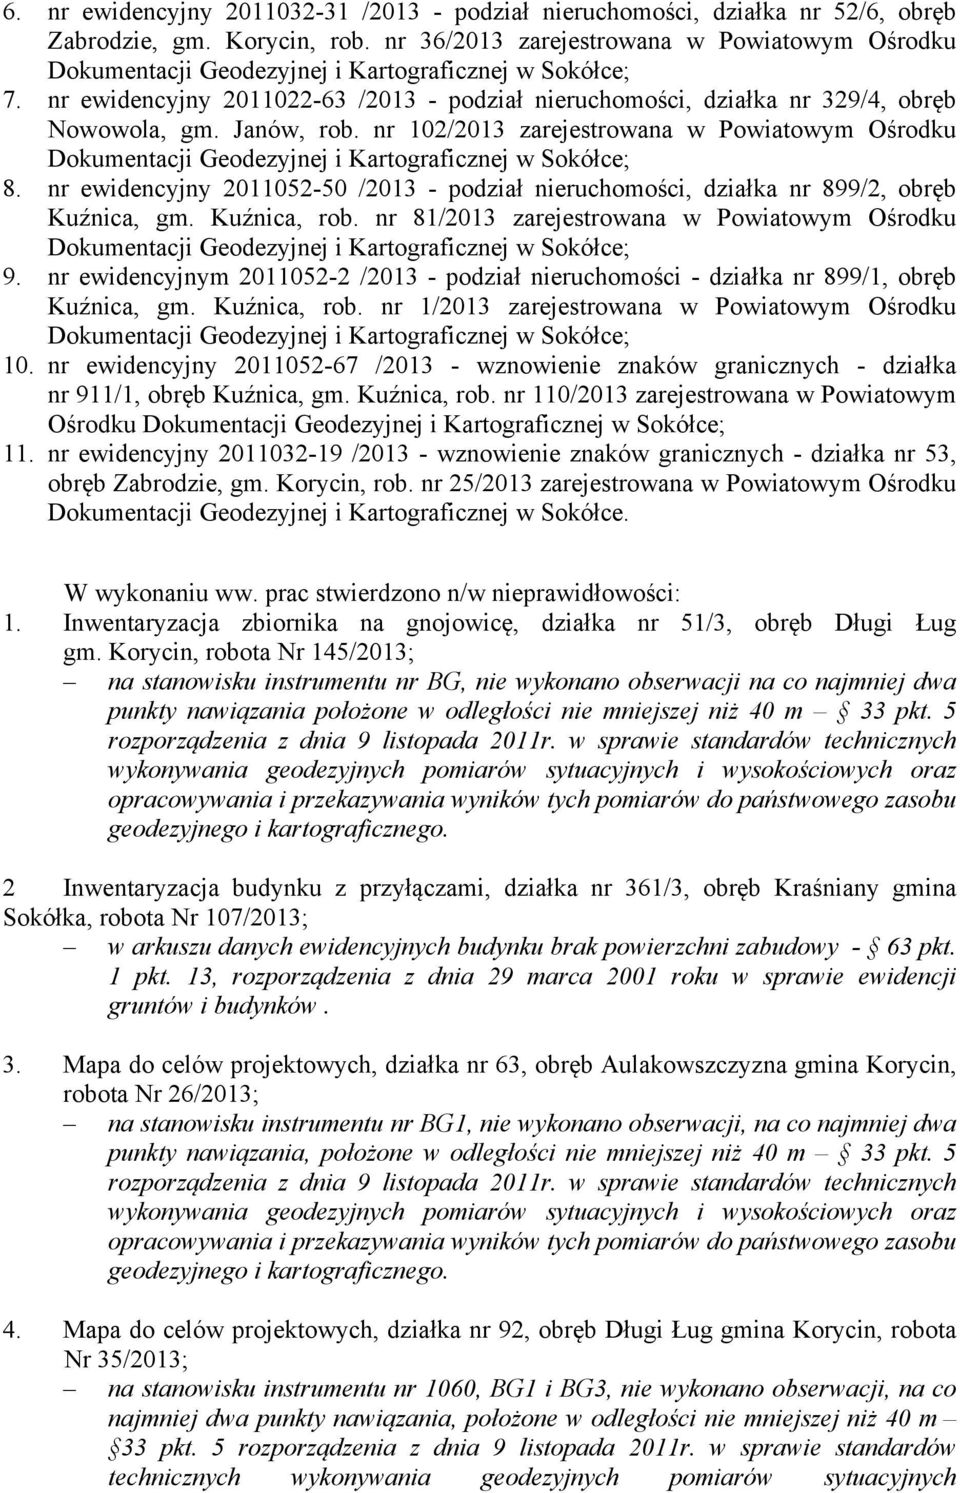 nr ewidencyjny 2011052-50 /2013 - podział nieruchomości, działka nr 899/2, obręb Kuźnica, gm. Kuźnica, rob. nr 81/2013 zarejestrowana w Powiatowym Ośrodku 9.